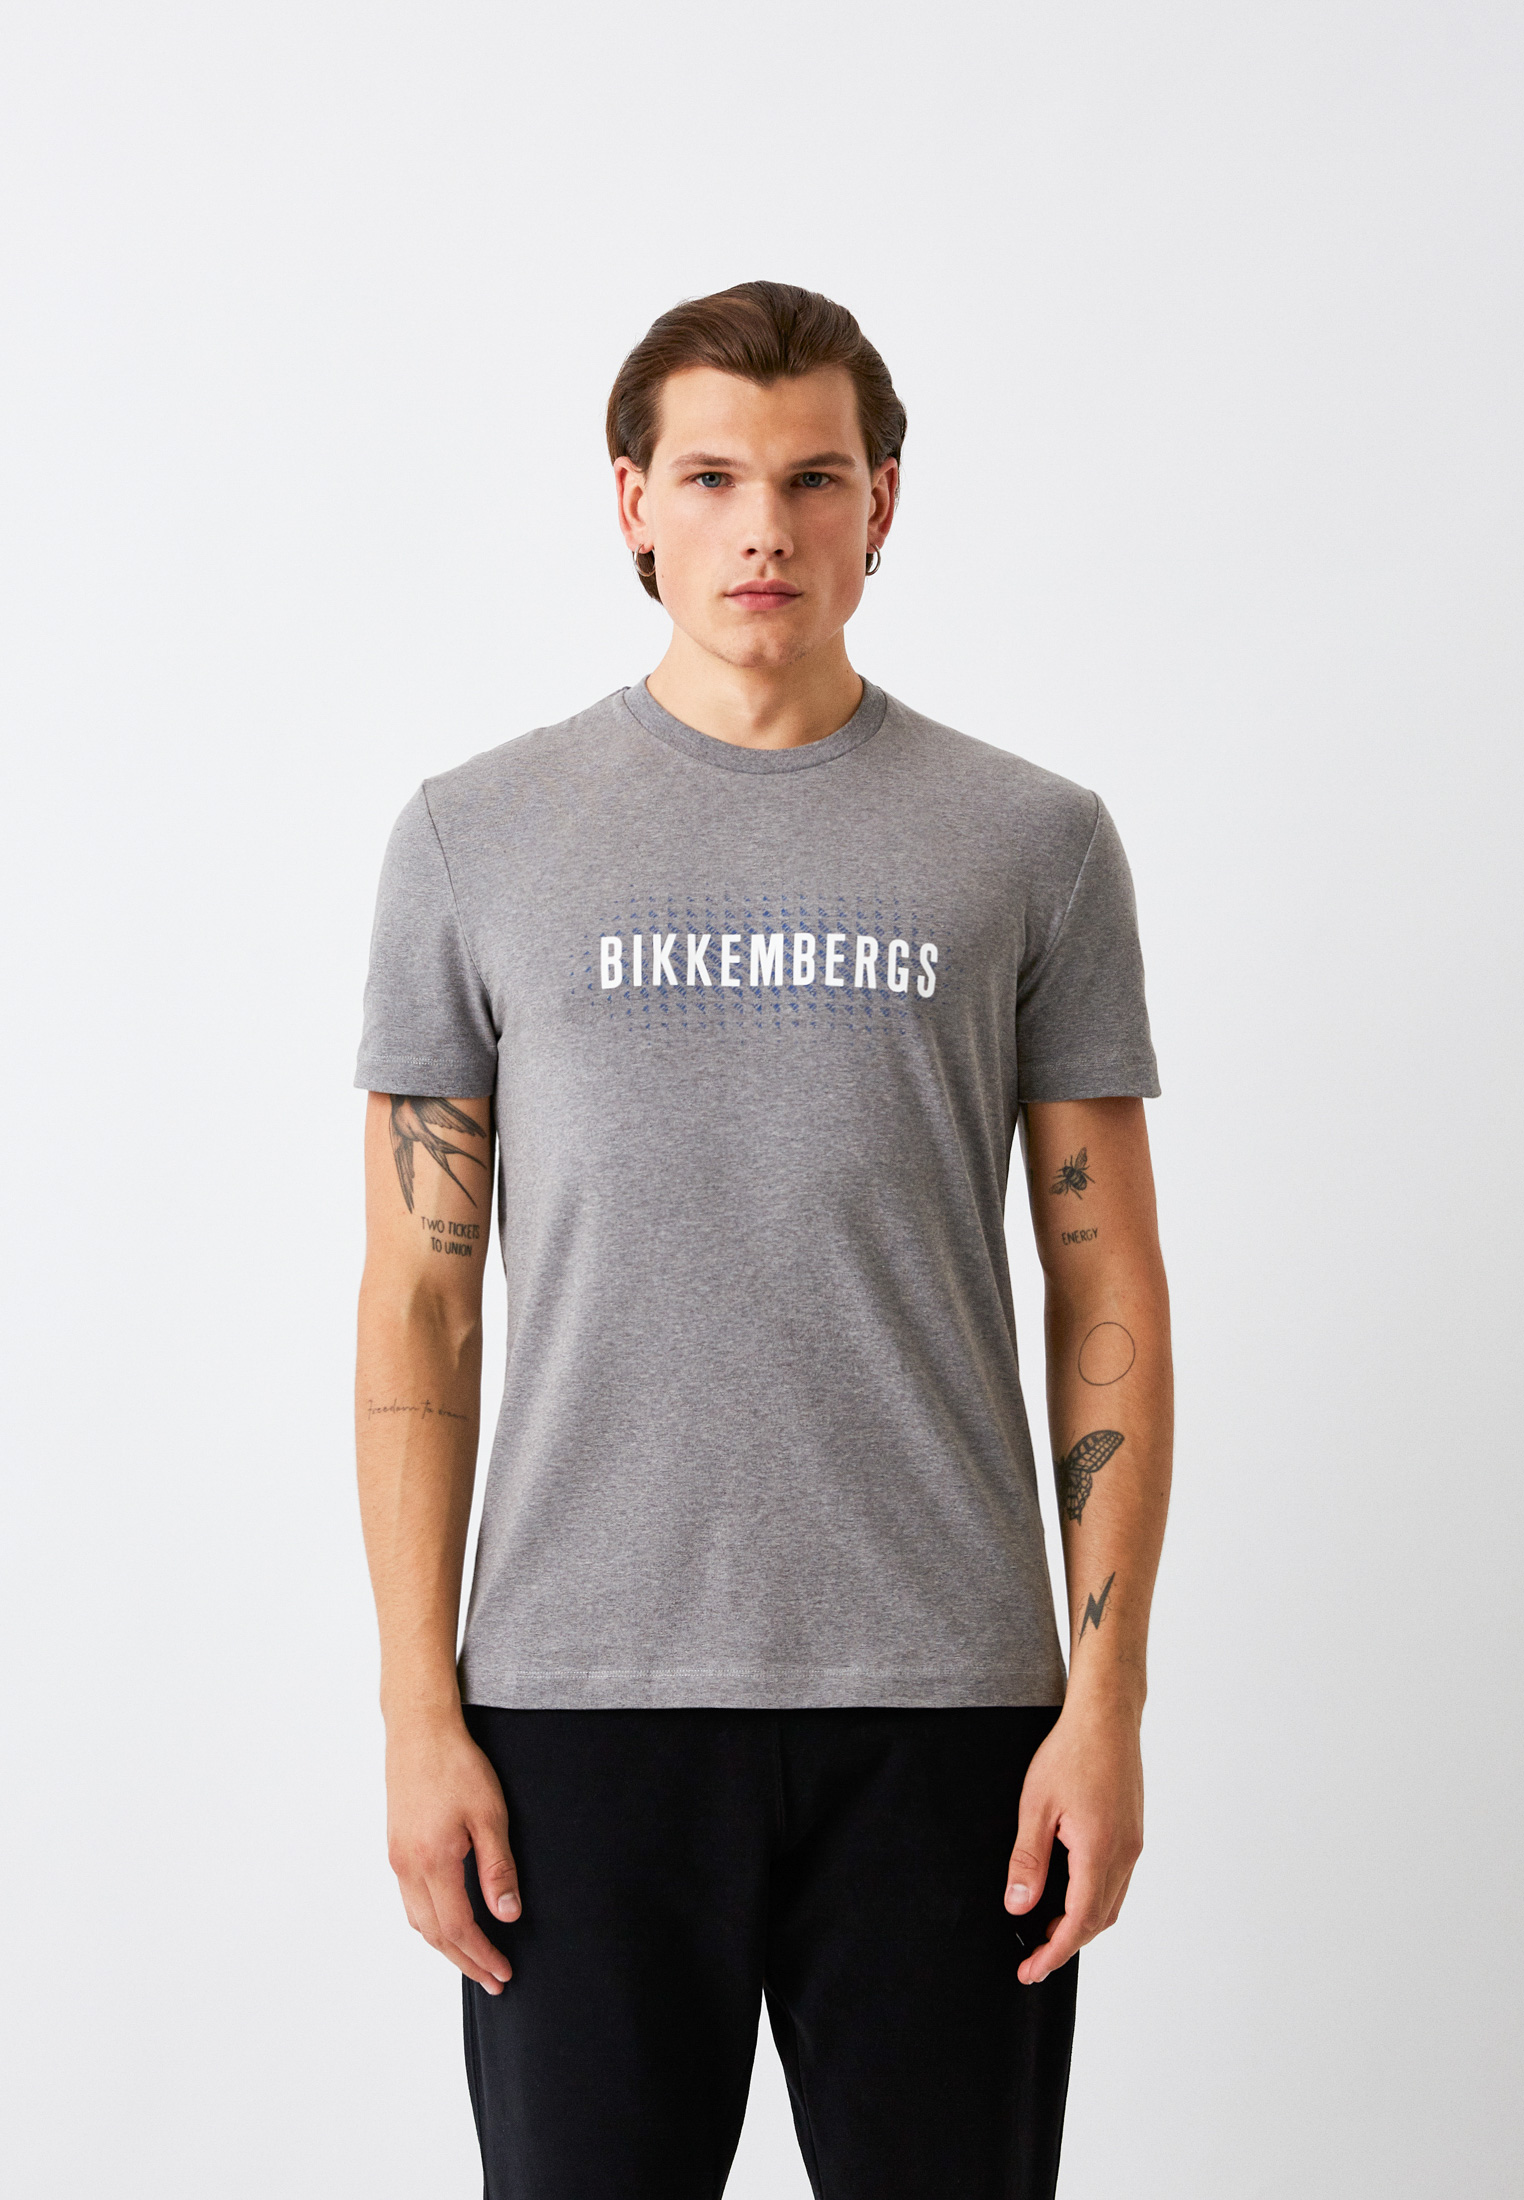 Мужская футболка Bikkembergs (Биккембергс) C 4 101 49 E 2296: изображение 1